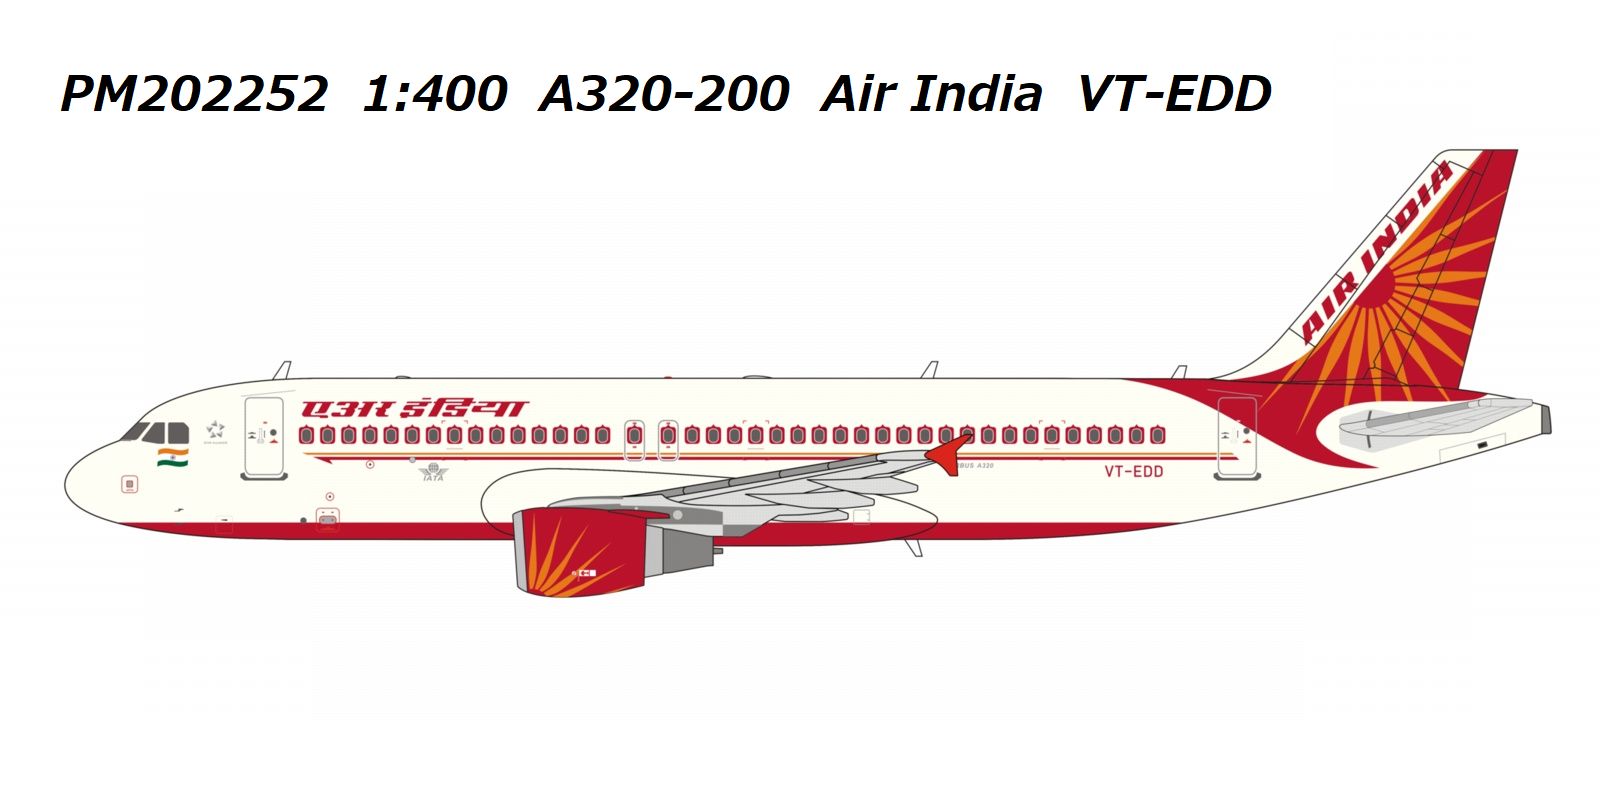 【予約商品】A320 エアインディア VT-EDD 1/400 (PM20230319R) [PM202252]